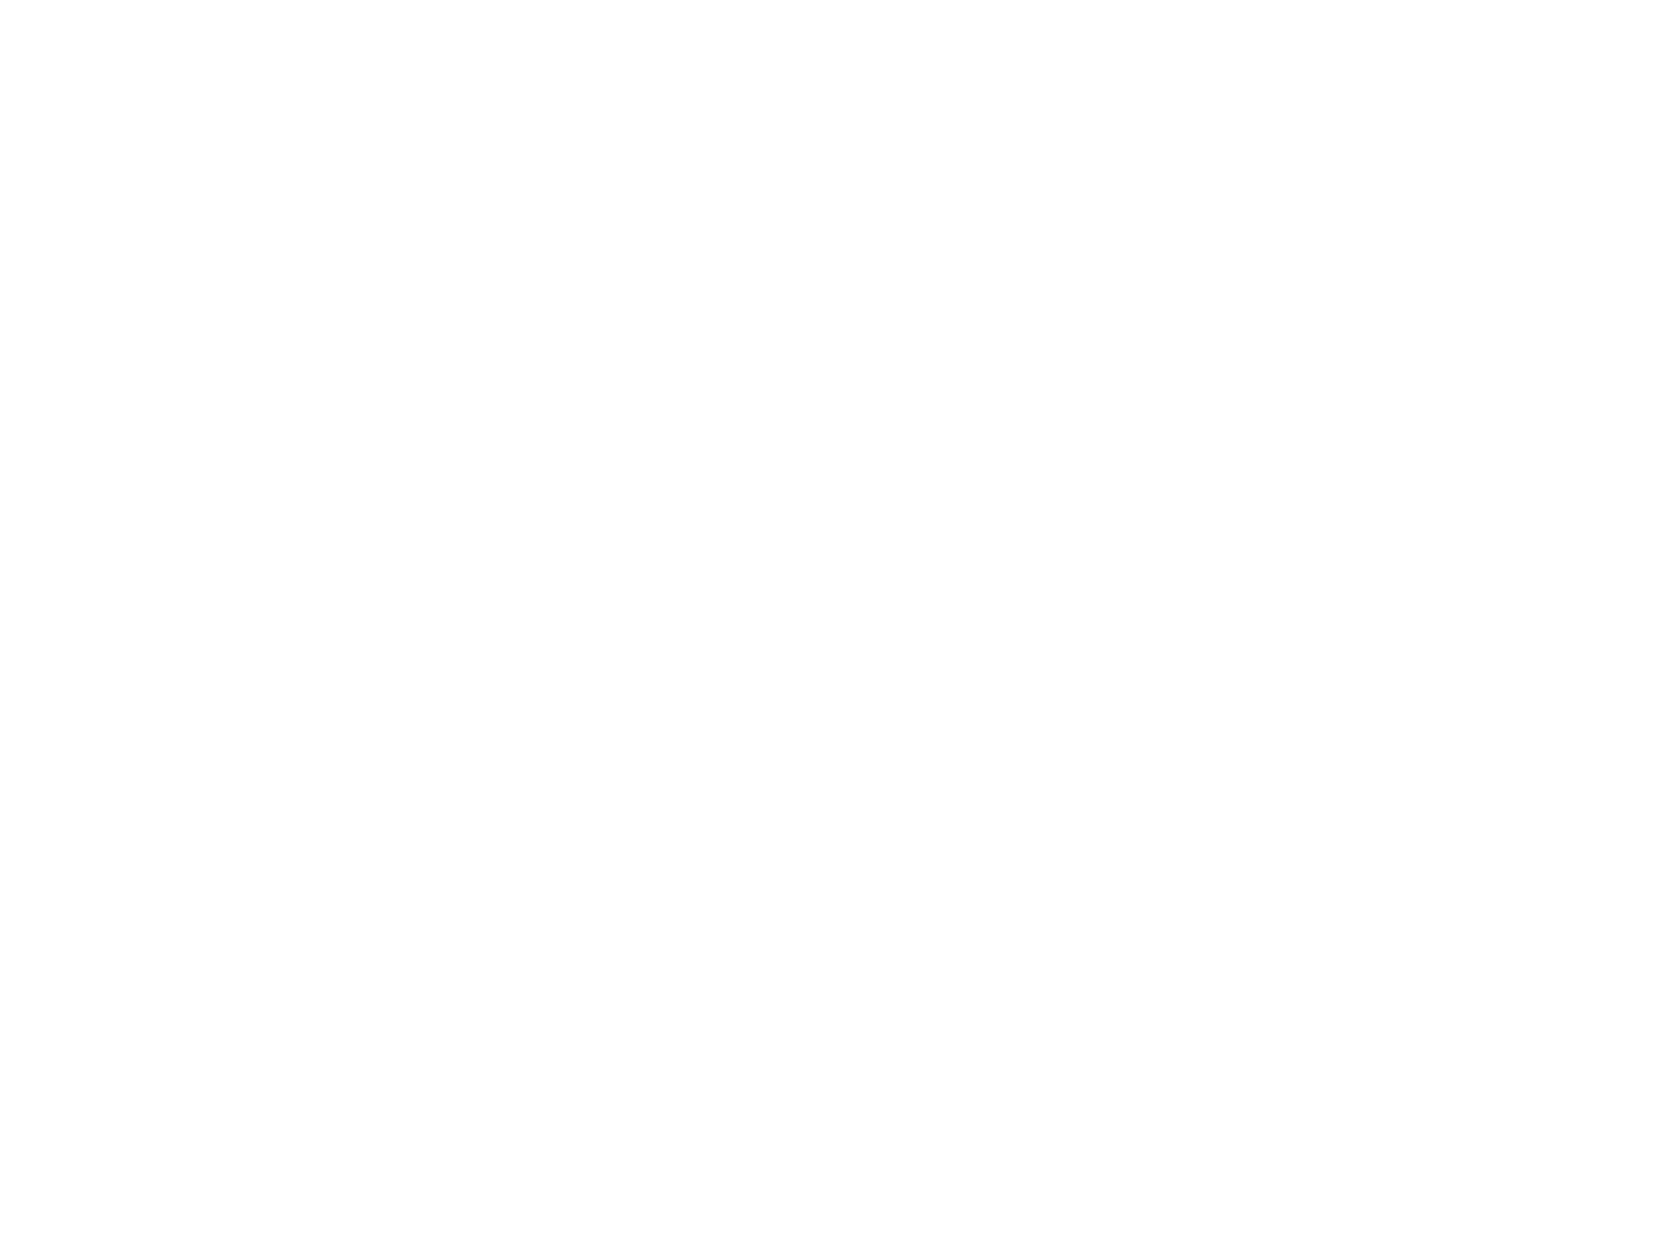 Ламповые часы из древесины Падук на газоразрядных индикаторах ИН-8-2 на черном фоне